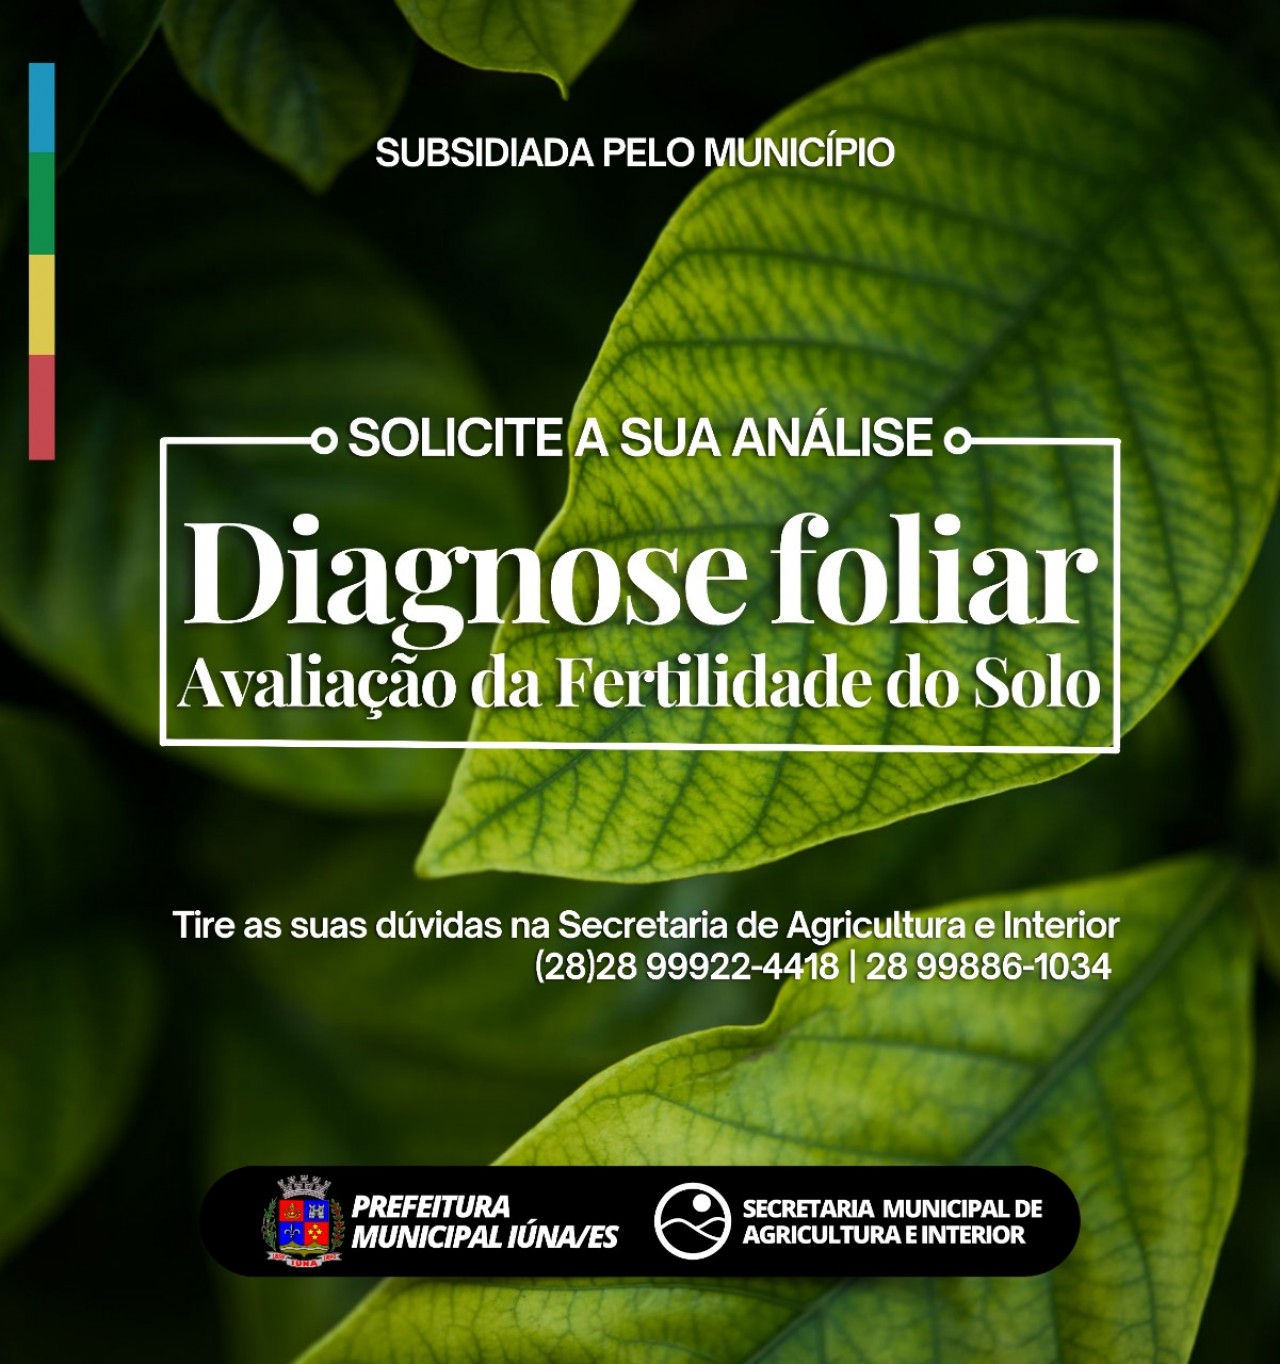 Diagnose foliar - Avaliação da Fertilidade do Solo